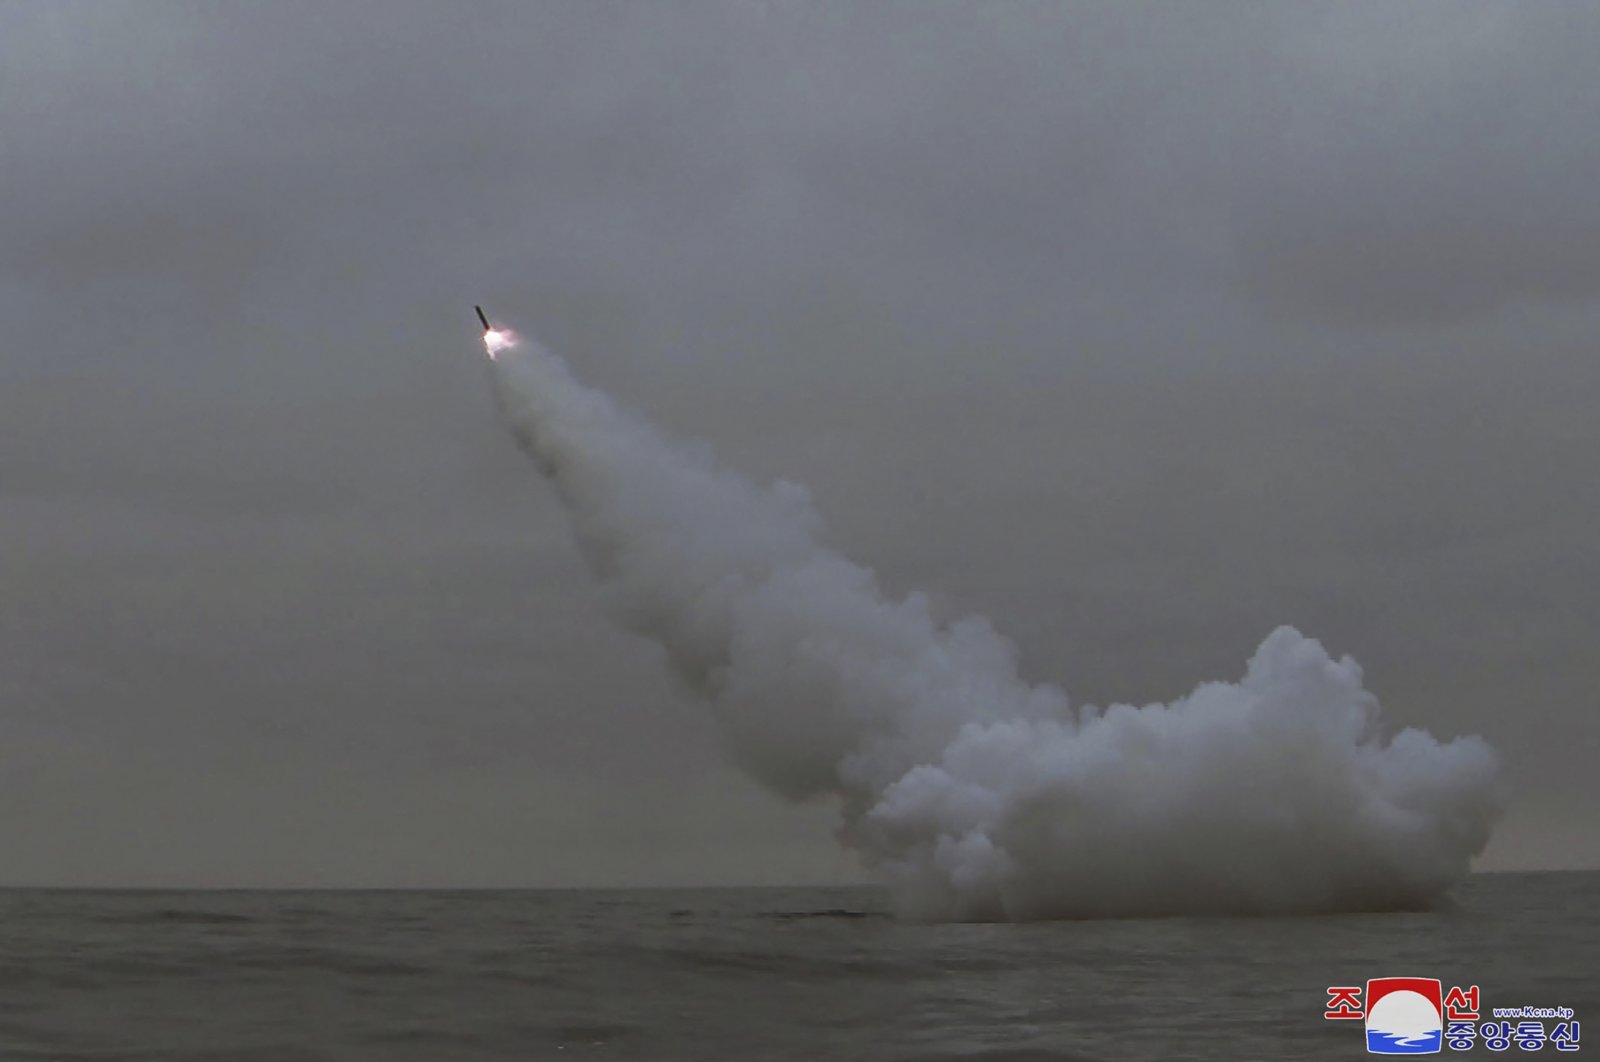 Korea Utara meluncurkan rudal dari kapal selam AS, Selatan memulai latihan besar